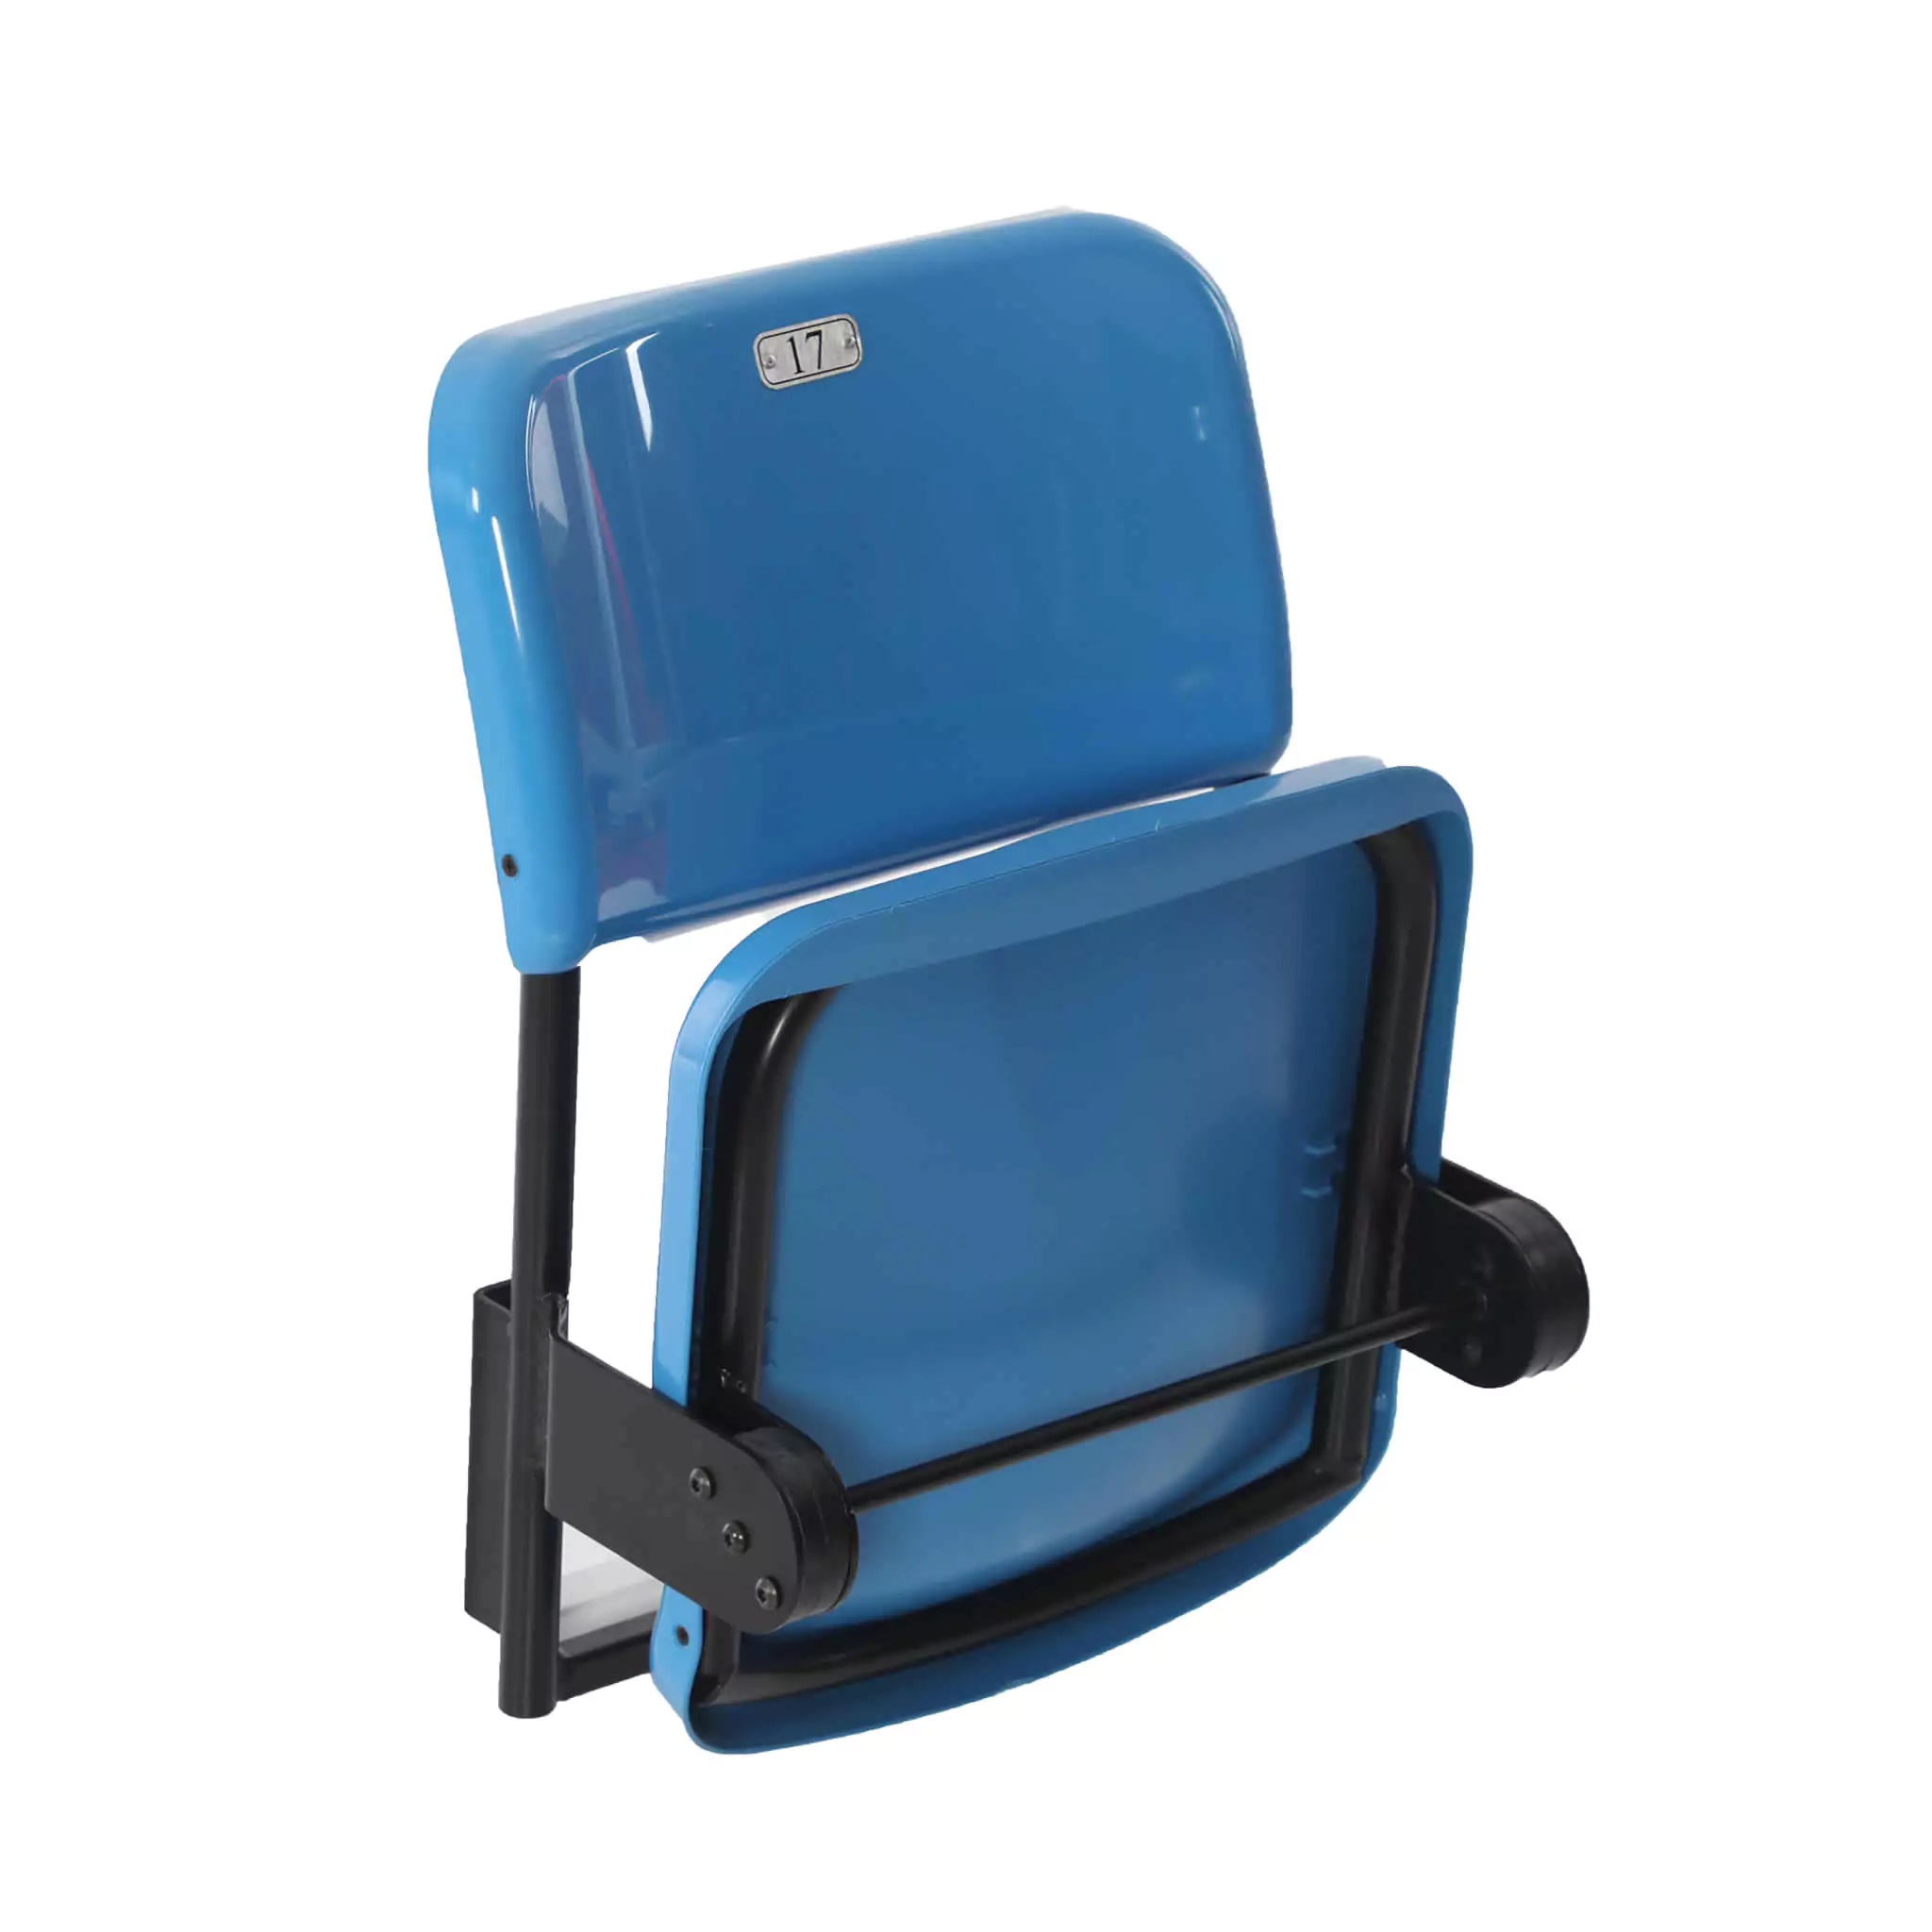 Simko Seating Product Foldable Stadium Seat Azurit 02